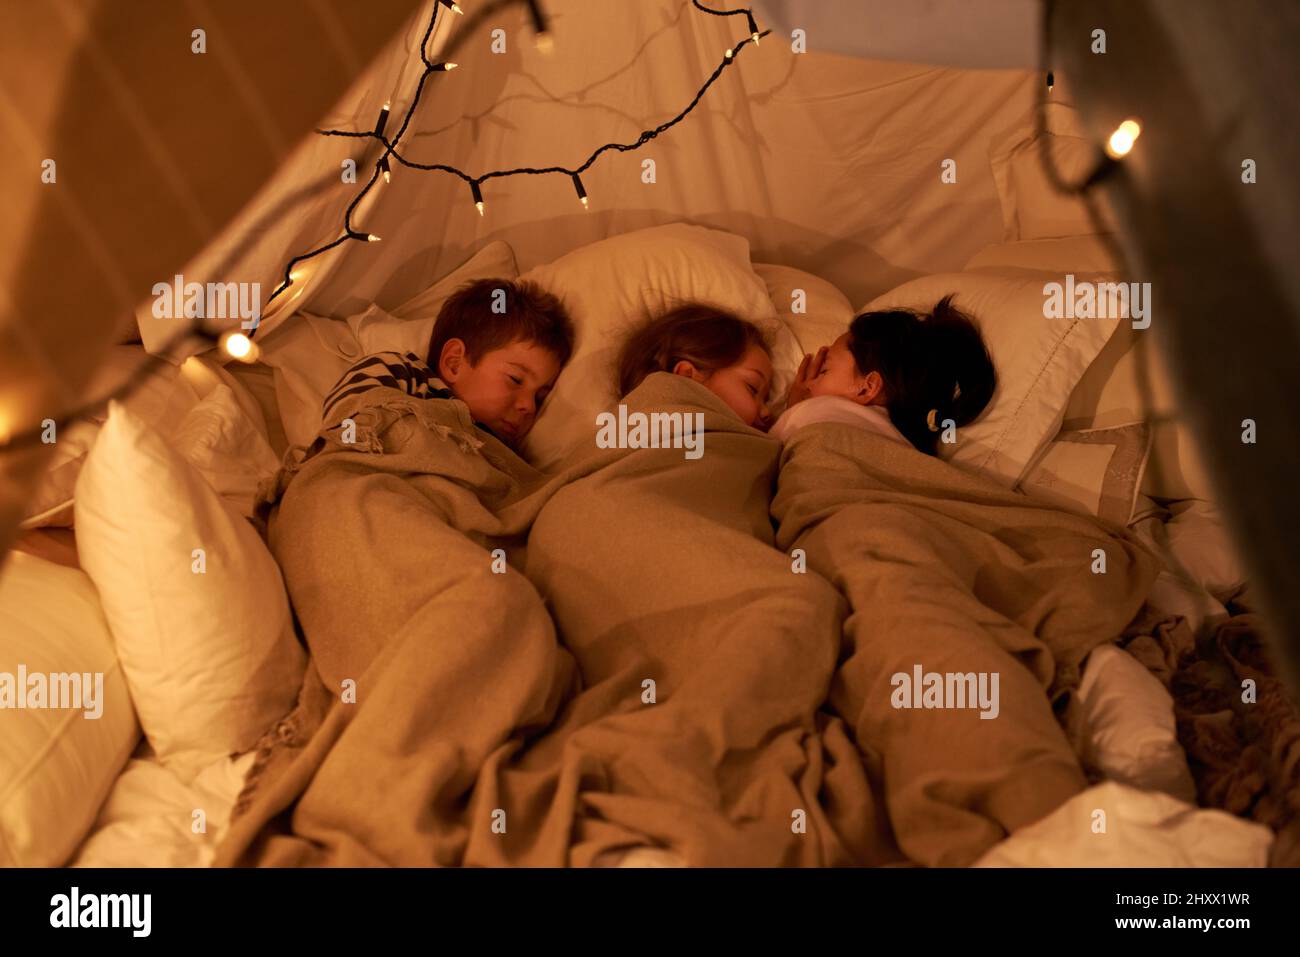 Schlafende kleine Engel. Aufnahme von drei kleinen Kindern, die in einem Bettelzelt schlafen. Stockfoto